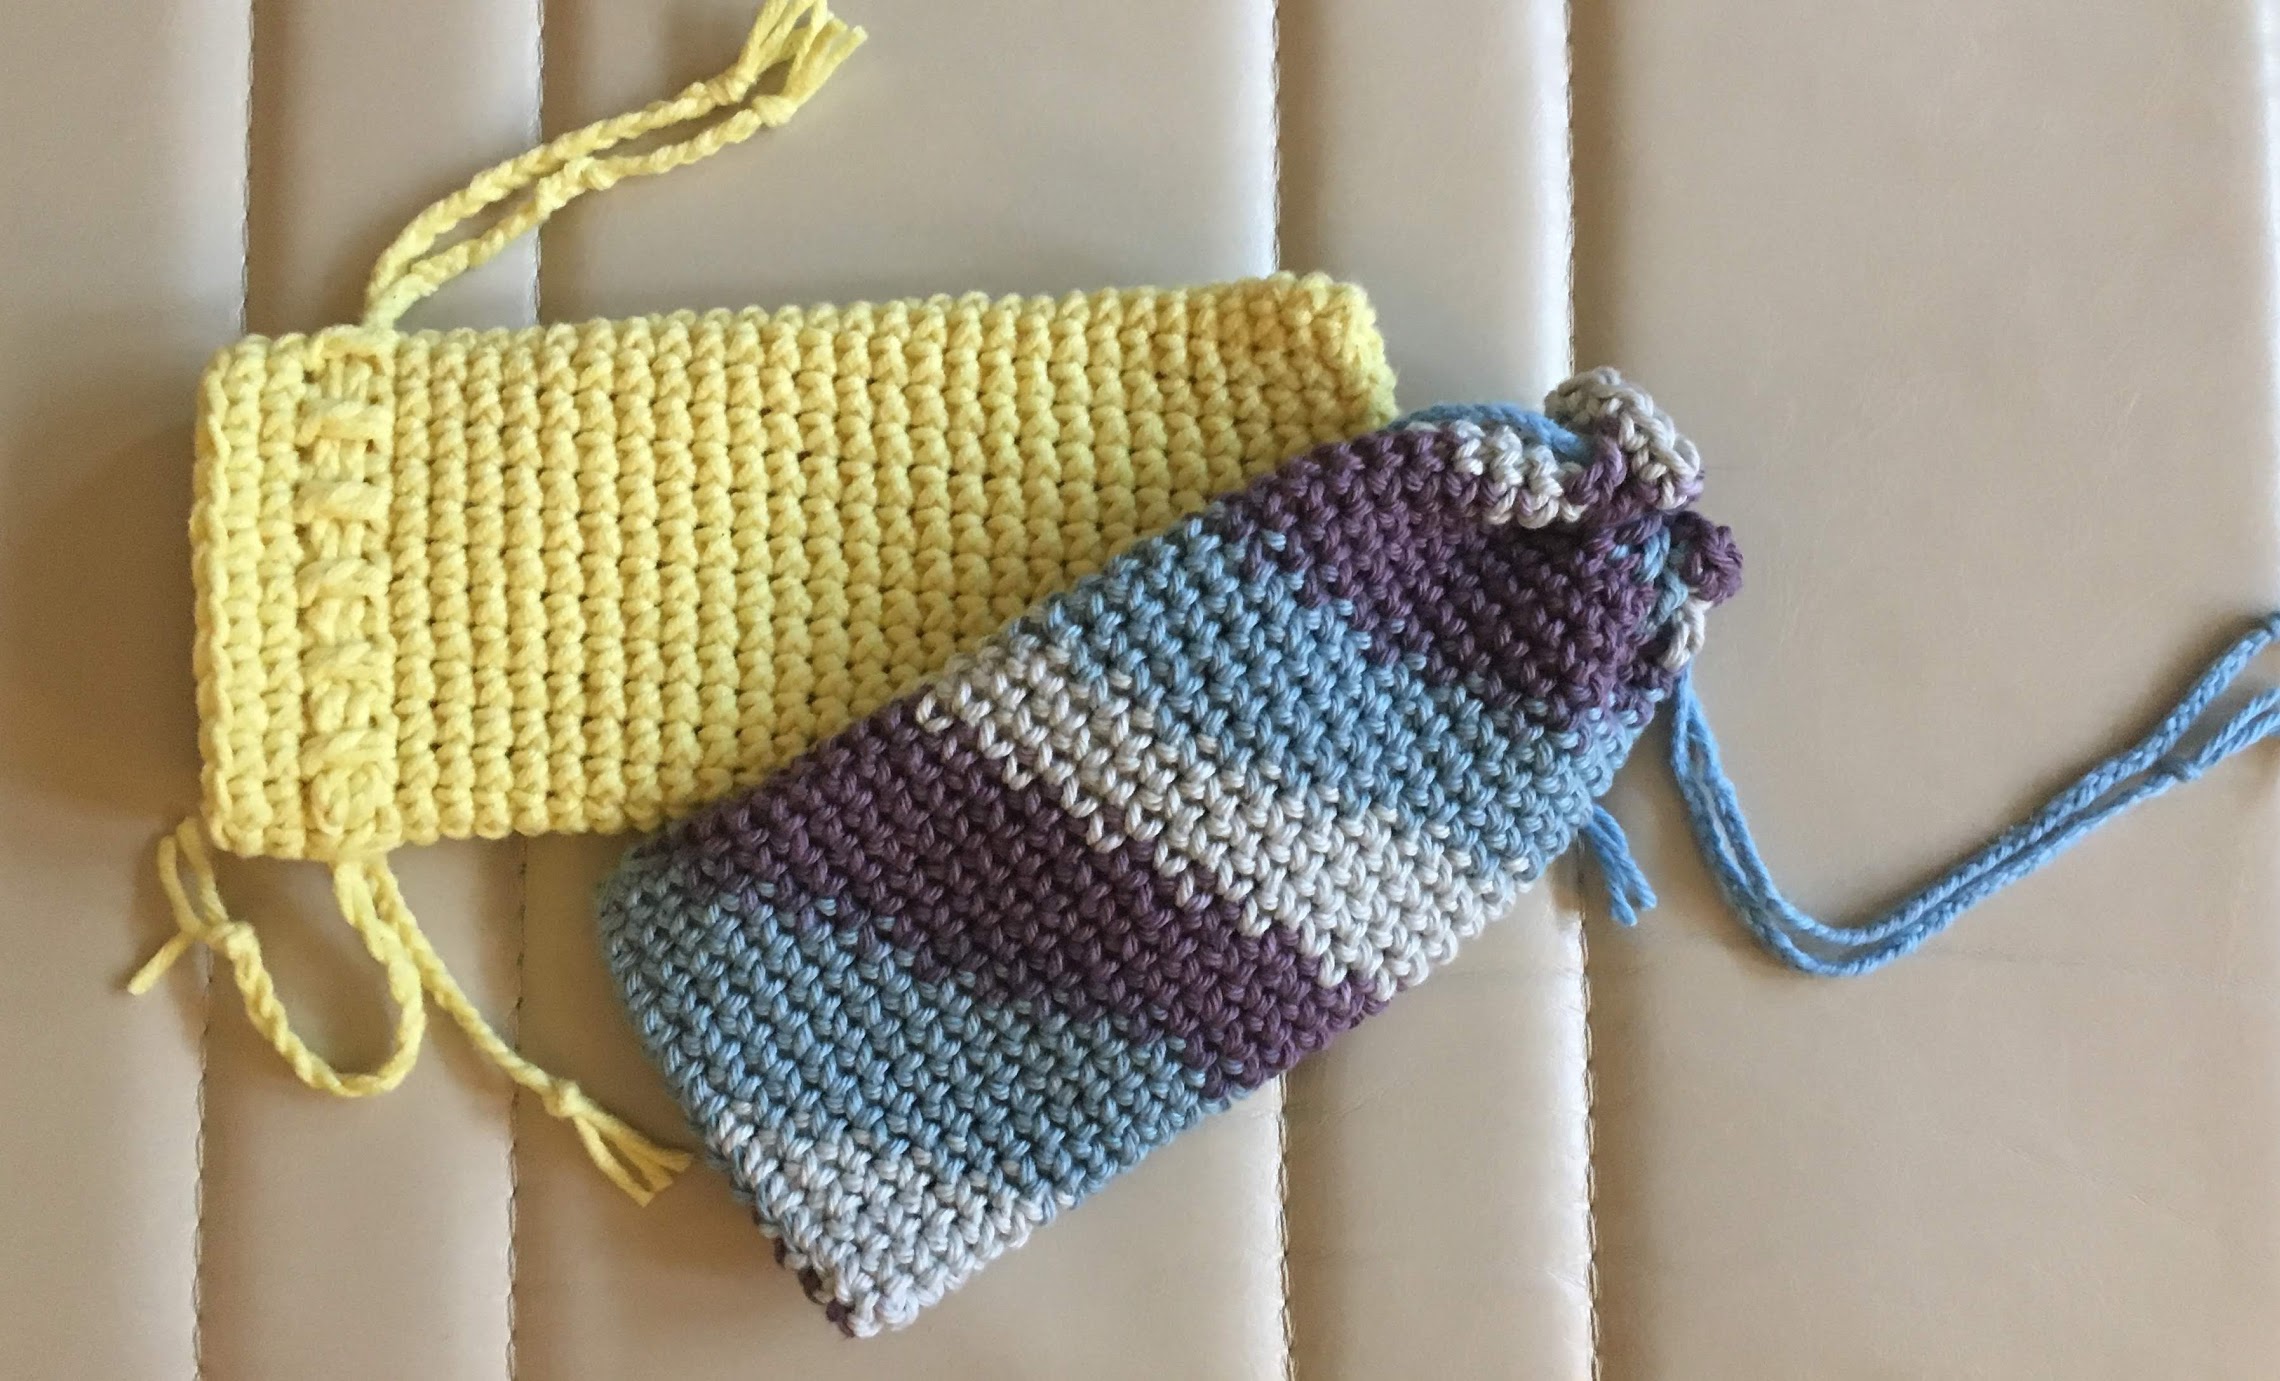 Easy Crochet Glasses Case - Free Pattern & Tutorial - Blue Star Crochet